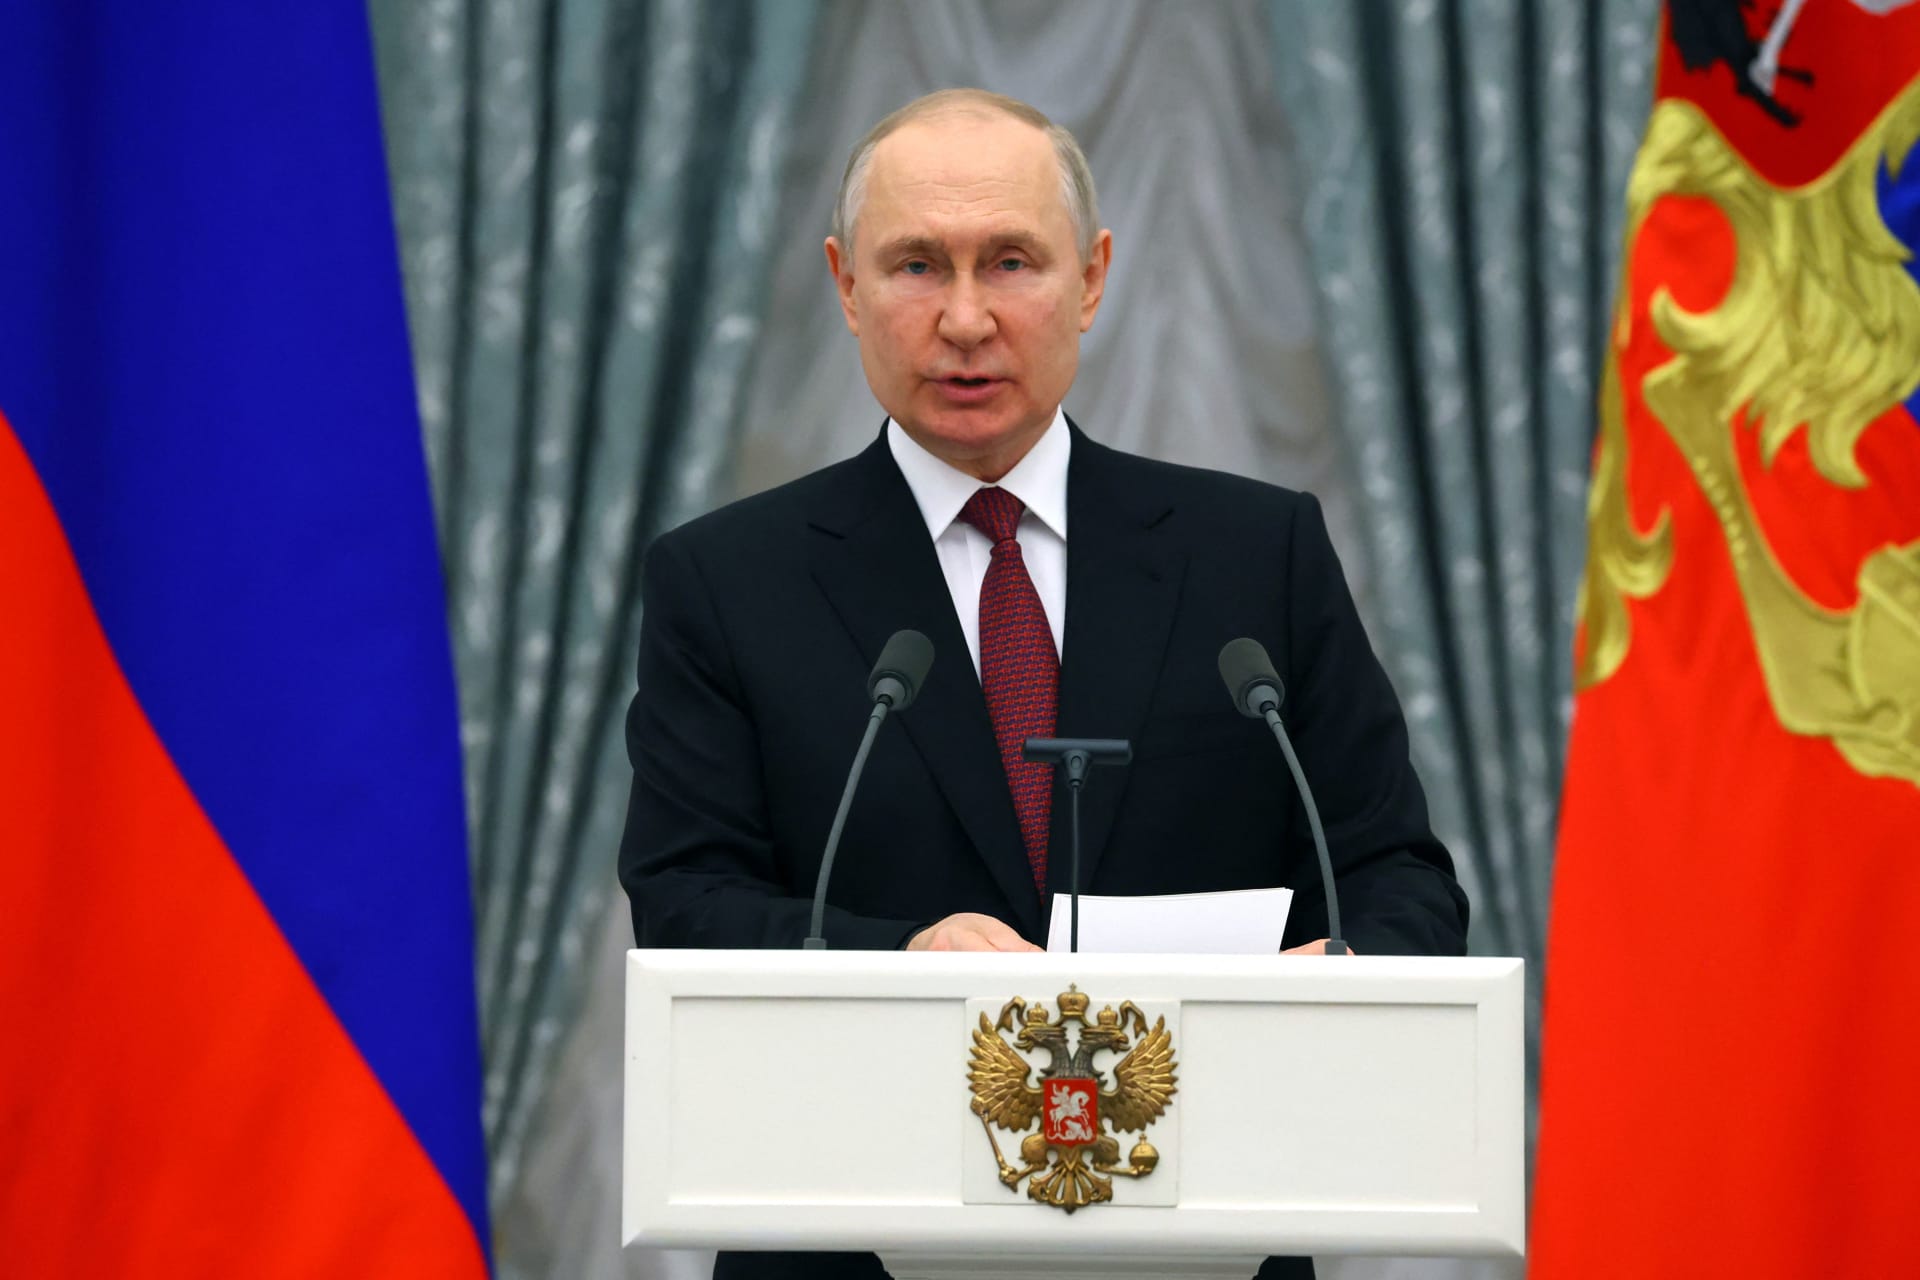 بوتين ينتقد "التدخل الوحشي" لبعض الدول في الشؤون الداخلية للآخرين